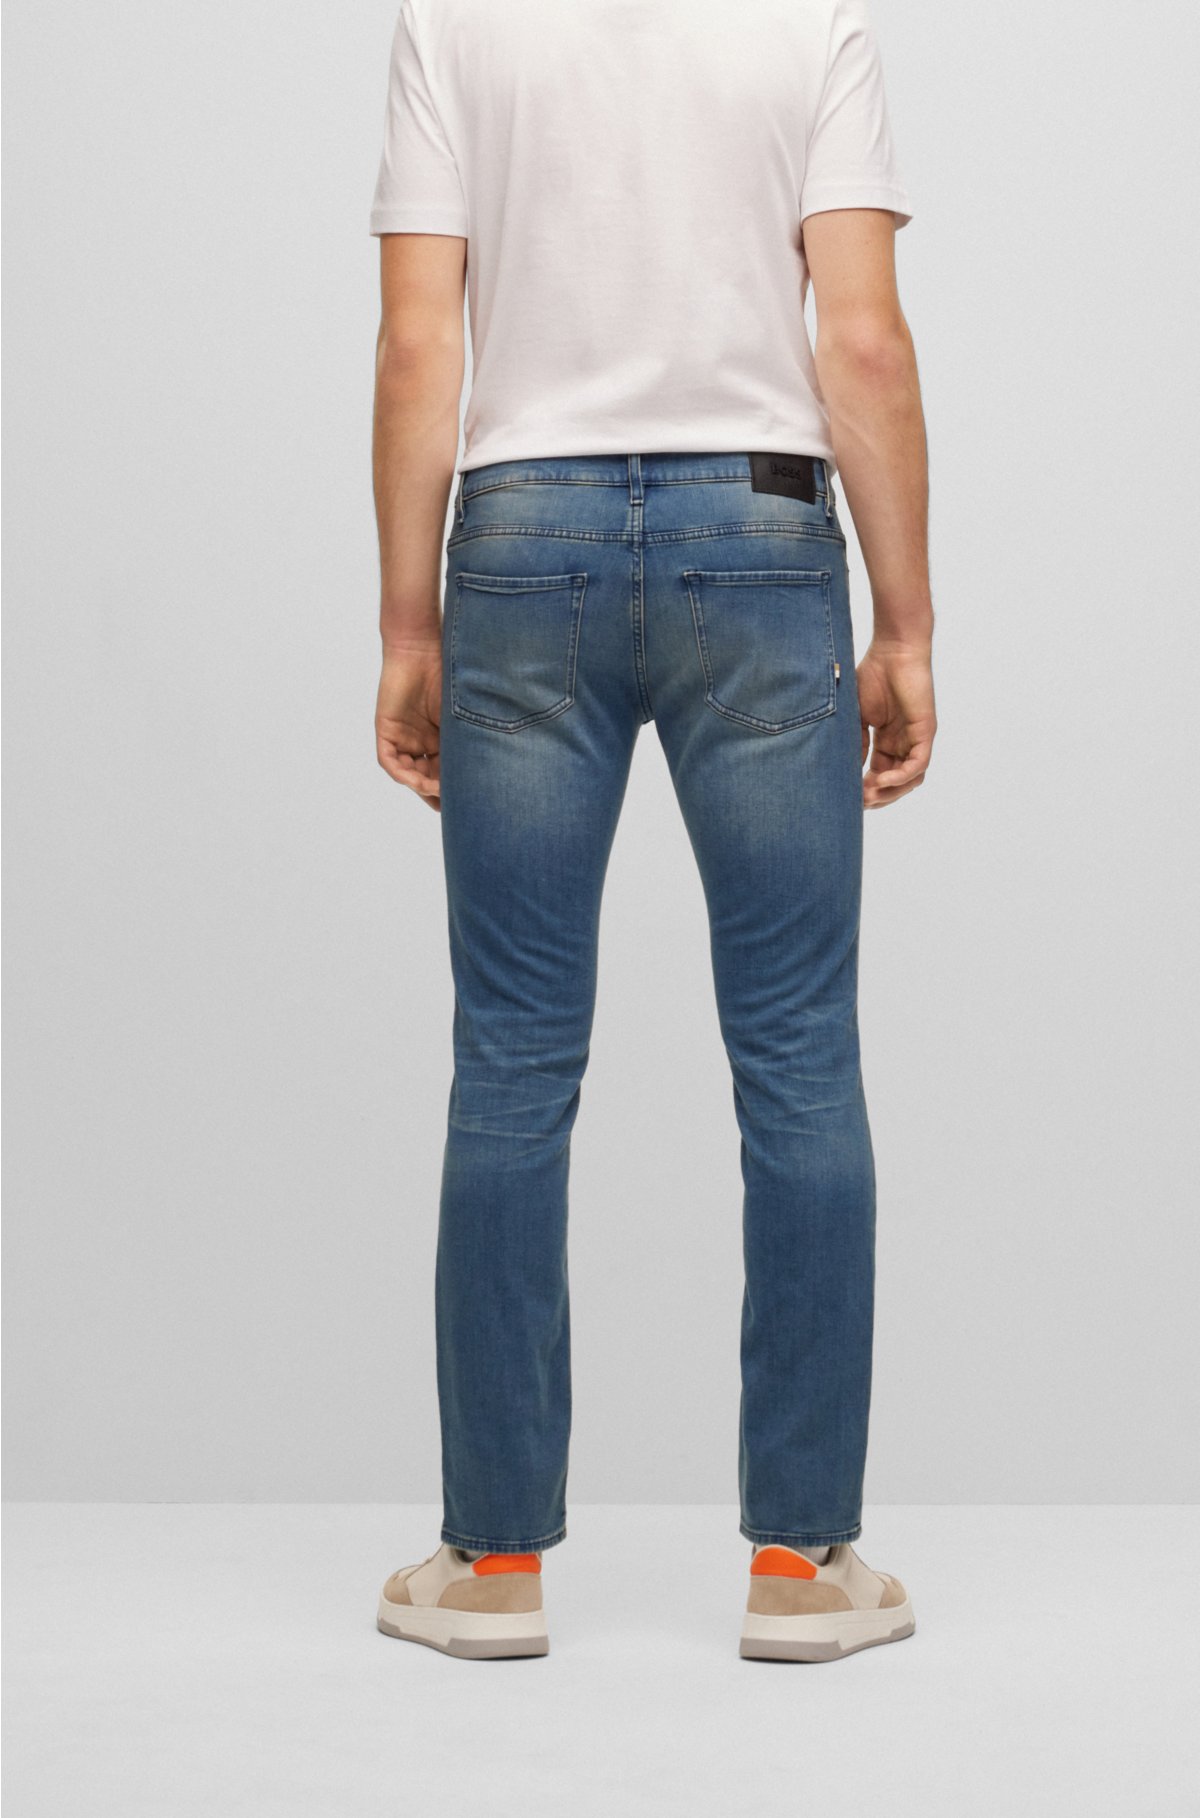 Slim-fit jeans in super-soft blue stretch denim